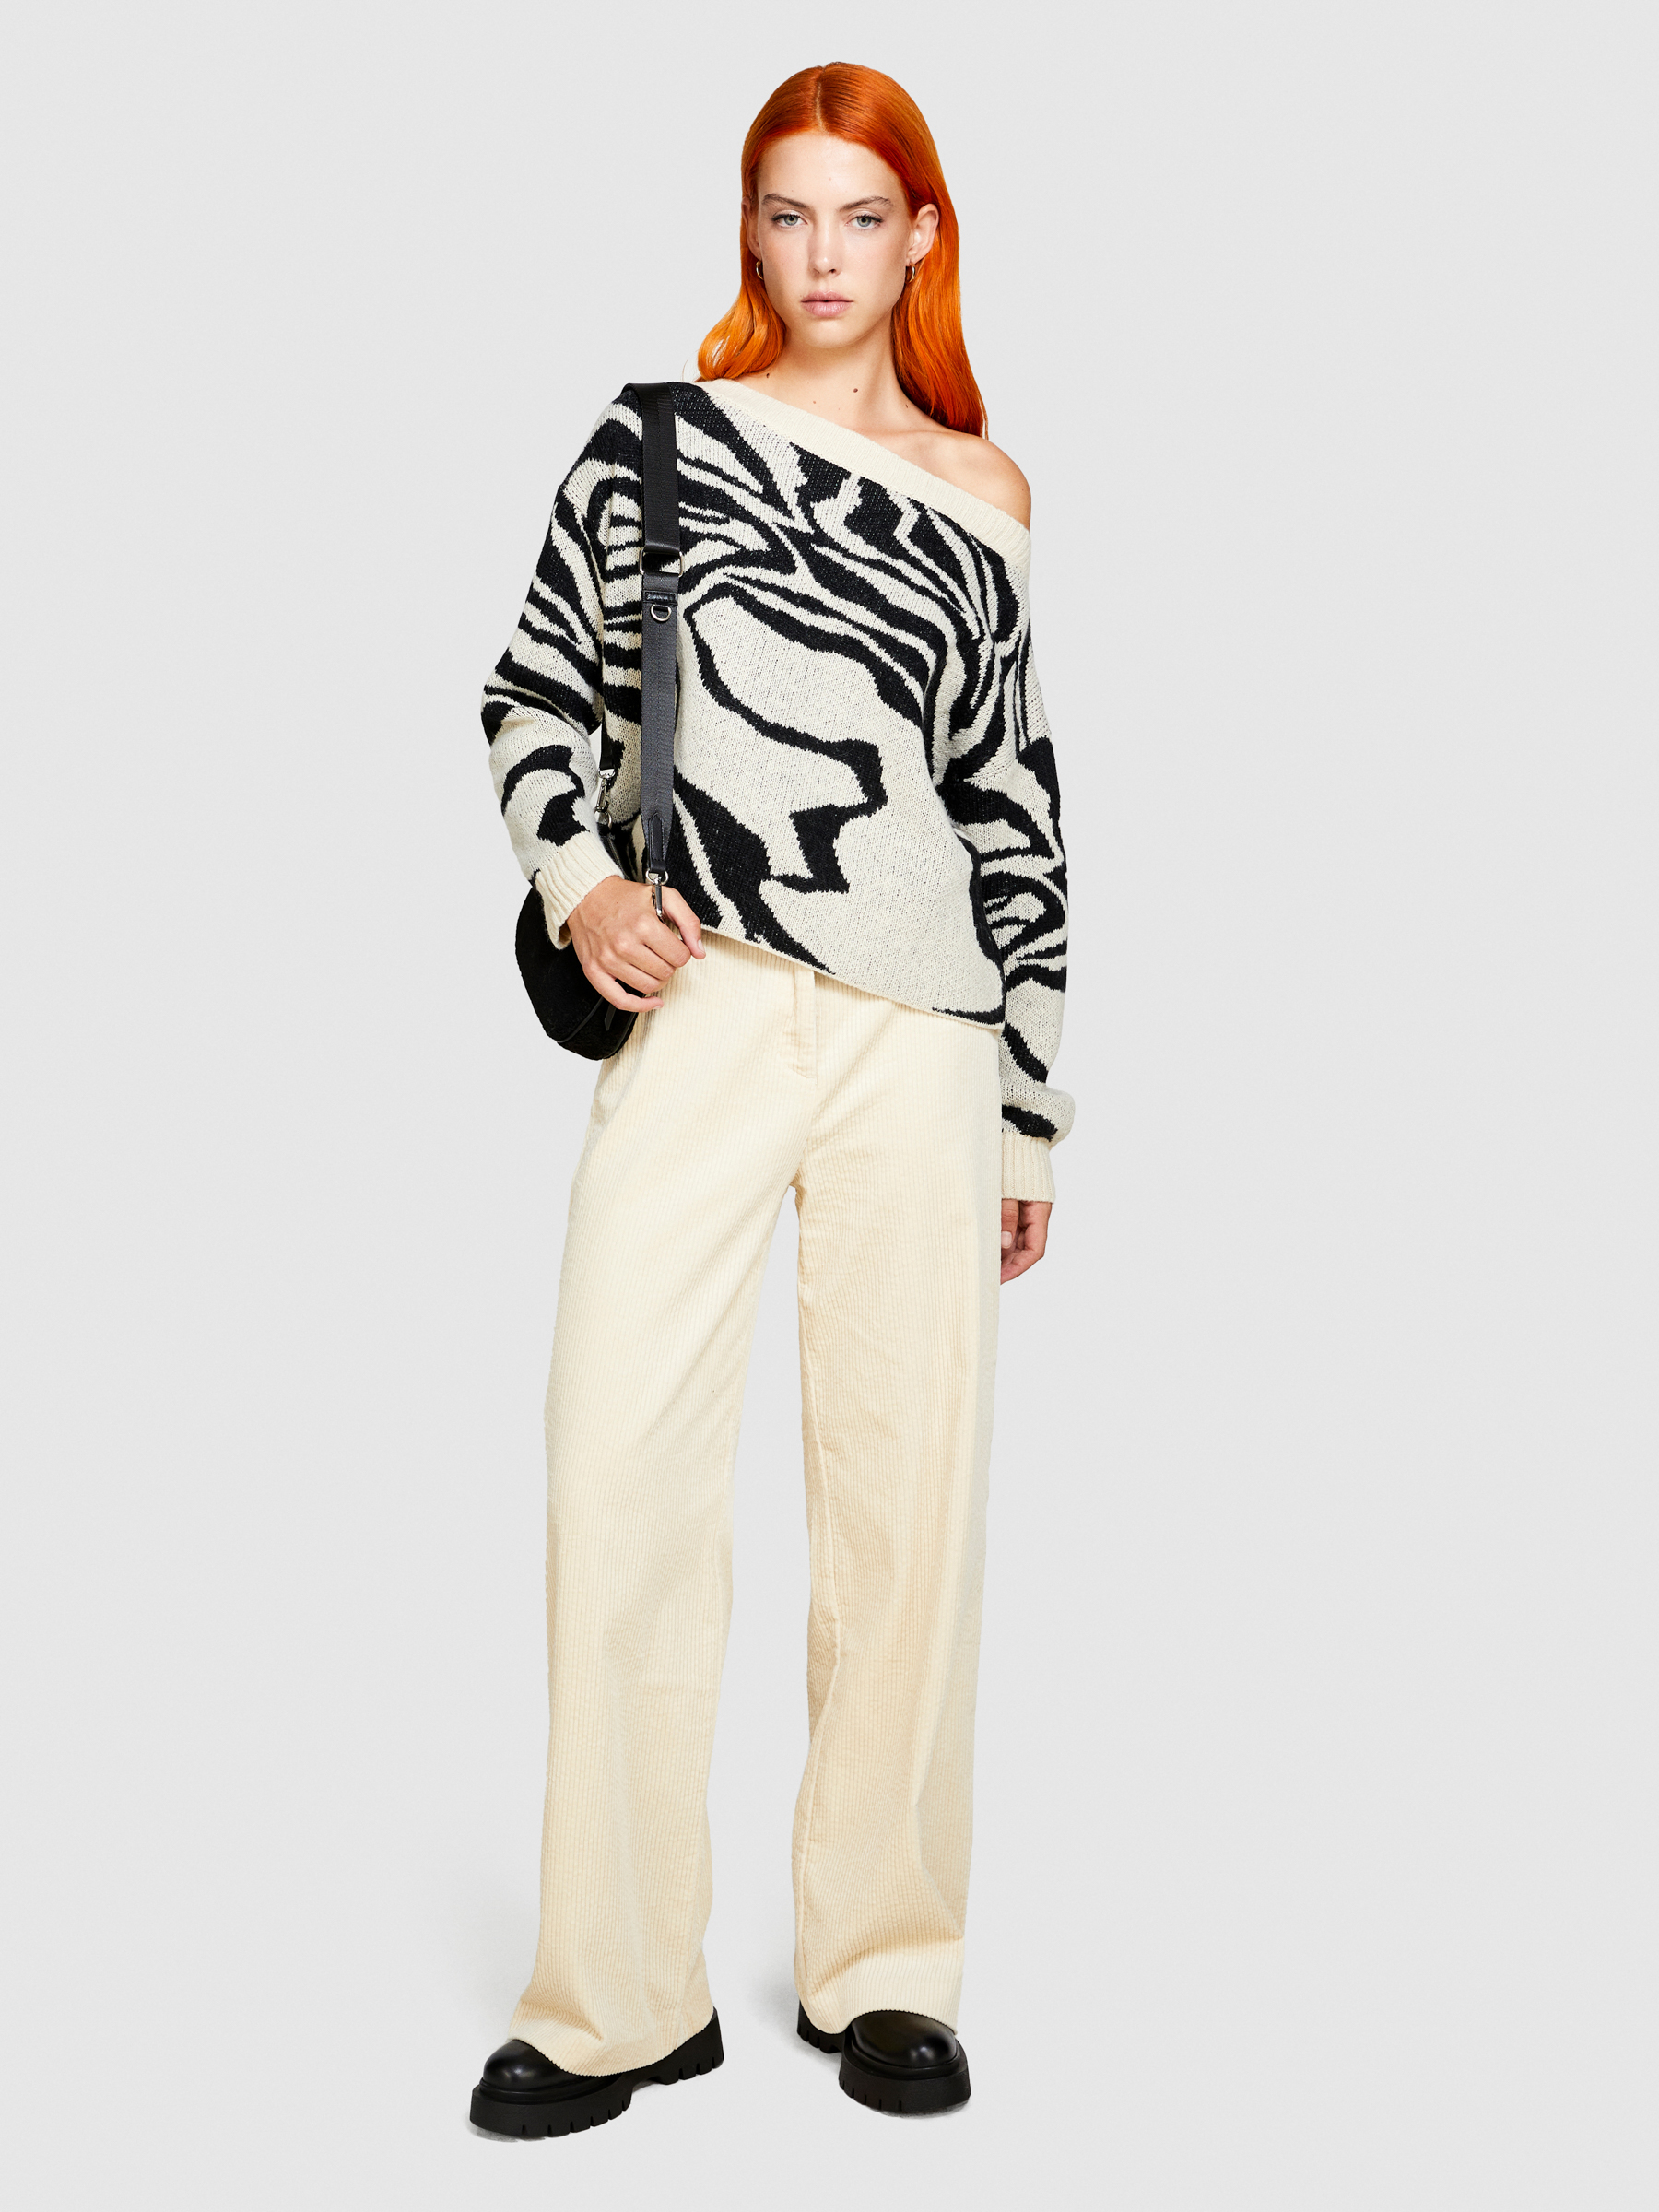 Sisley - Zebra-striped Sweater, Woman, Creamy White, Size: L